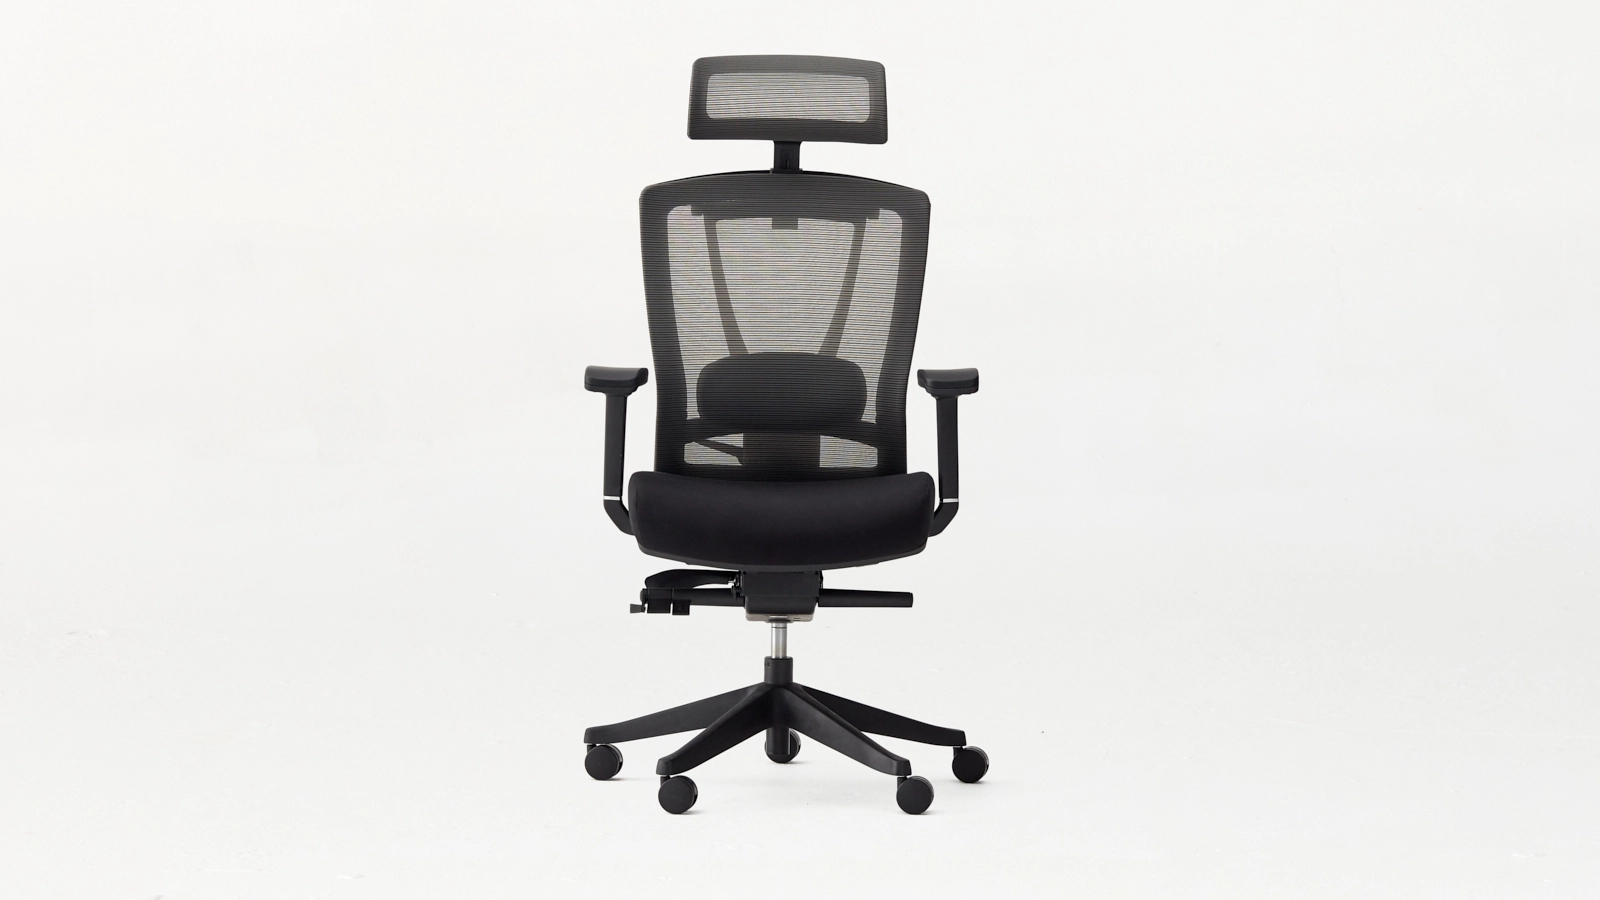 Autonomous Chair Ergo